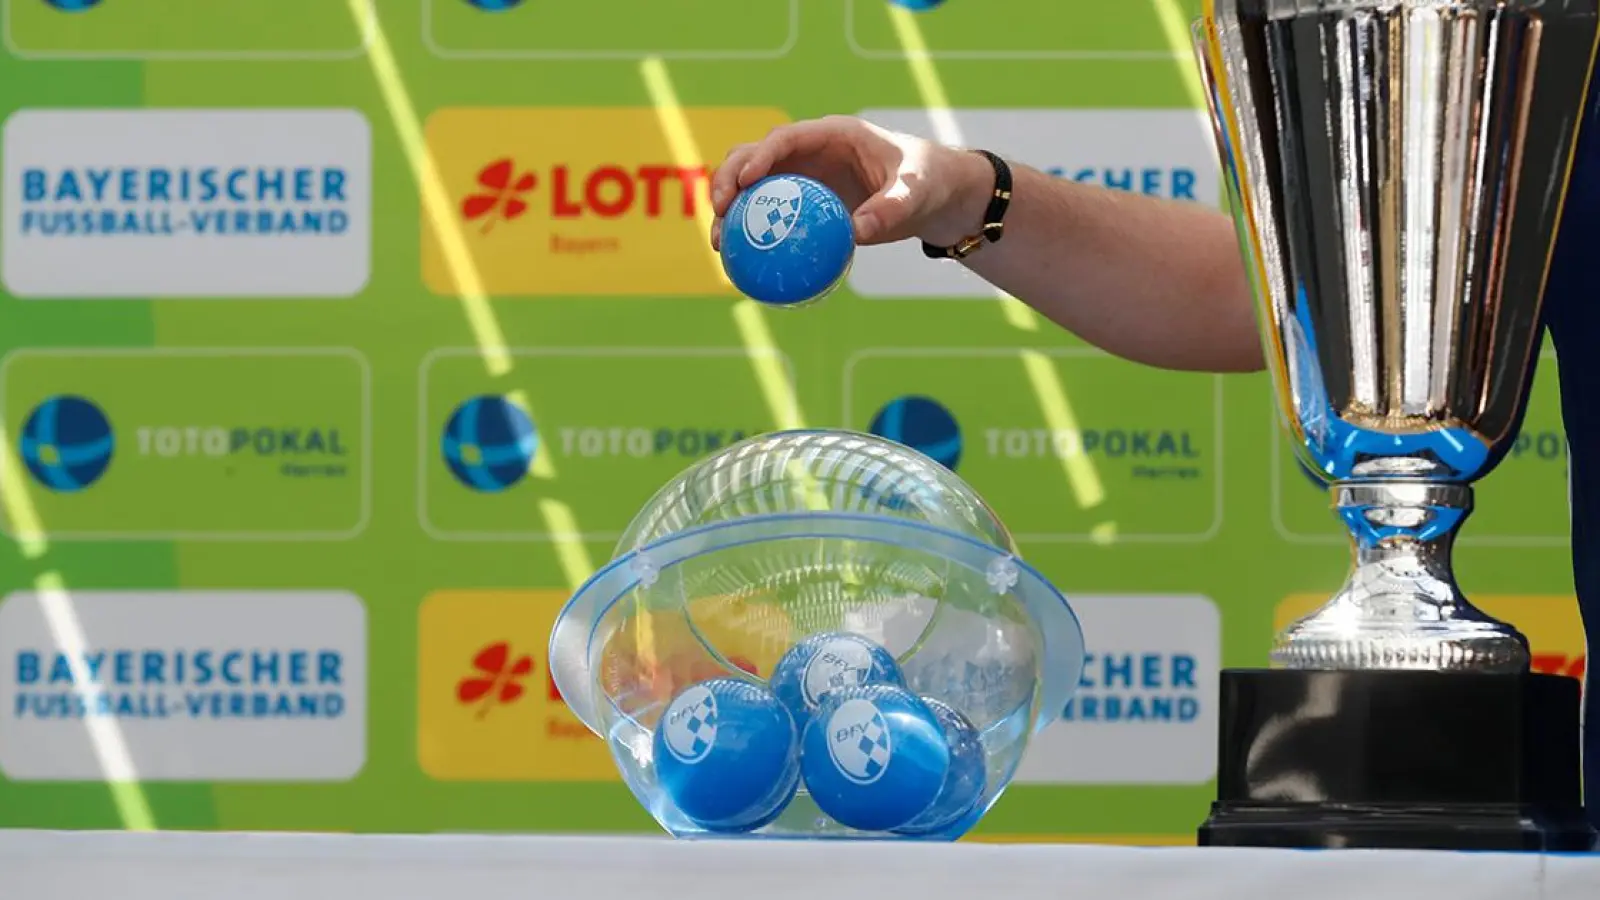 Achtelfinale im Toto-Pokal: Die Auslosung wird am Montag (22. August 2022) bei YouTube übertragen. (Foto: Bayerischer Fußball-Verband)